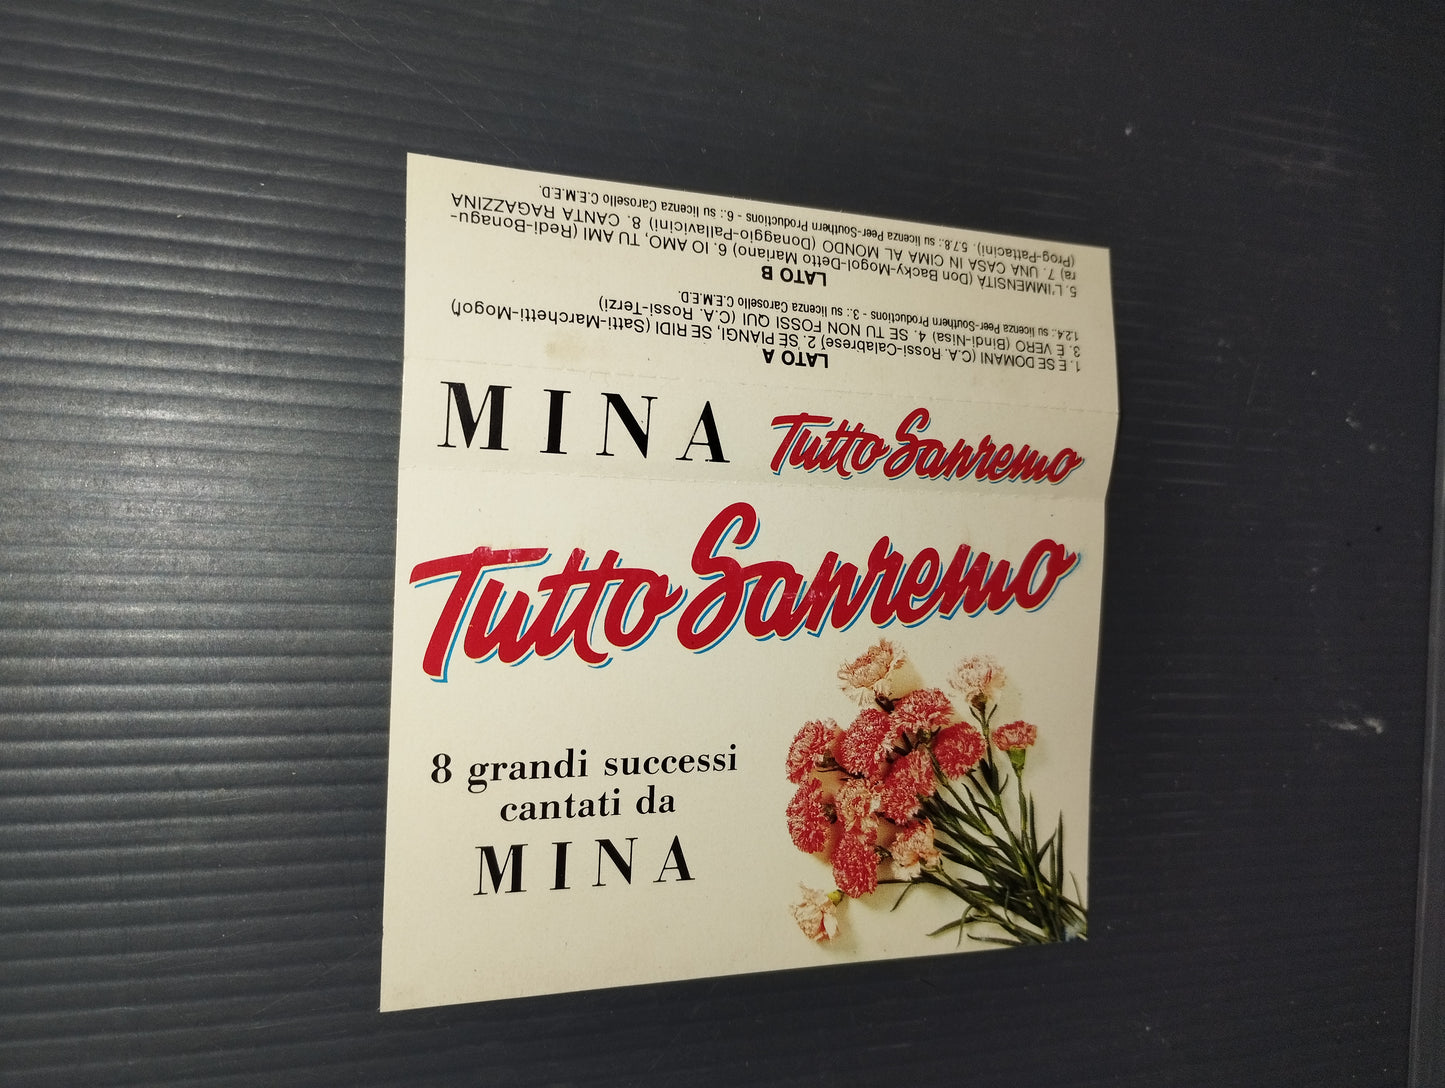 Tutto Sanremo" Mina Musicassetta
Edita nel 1987 da Gruppo Editoriale Fabbri